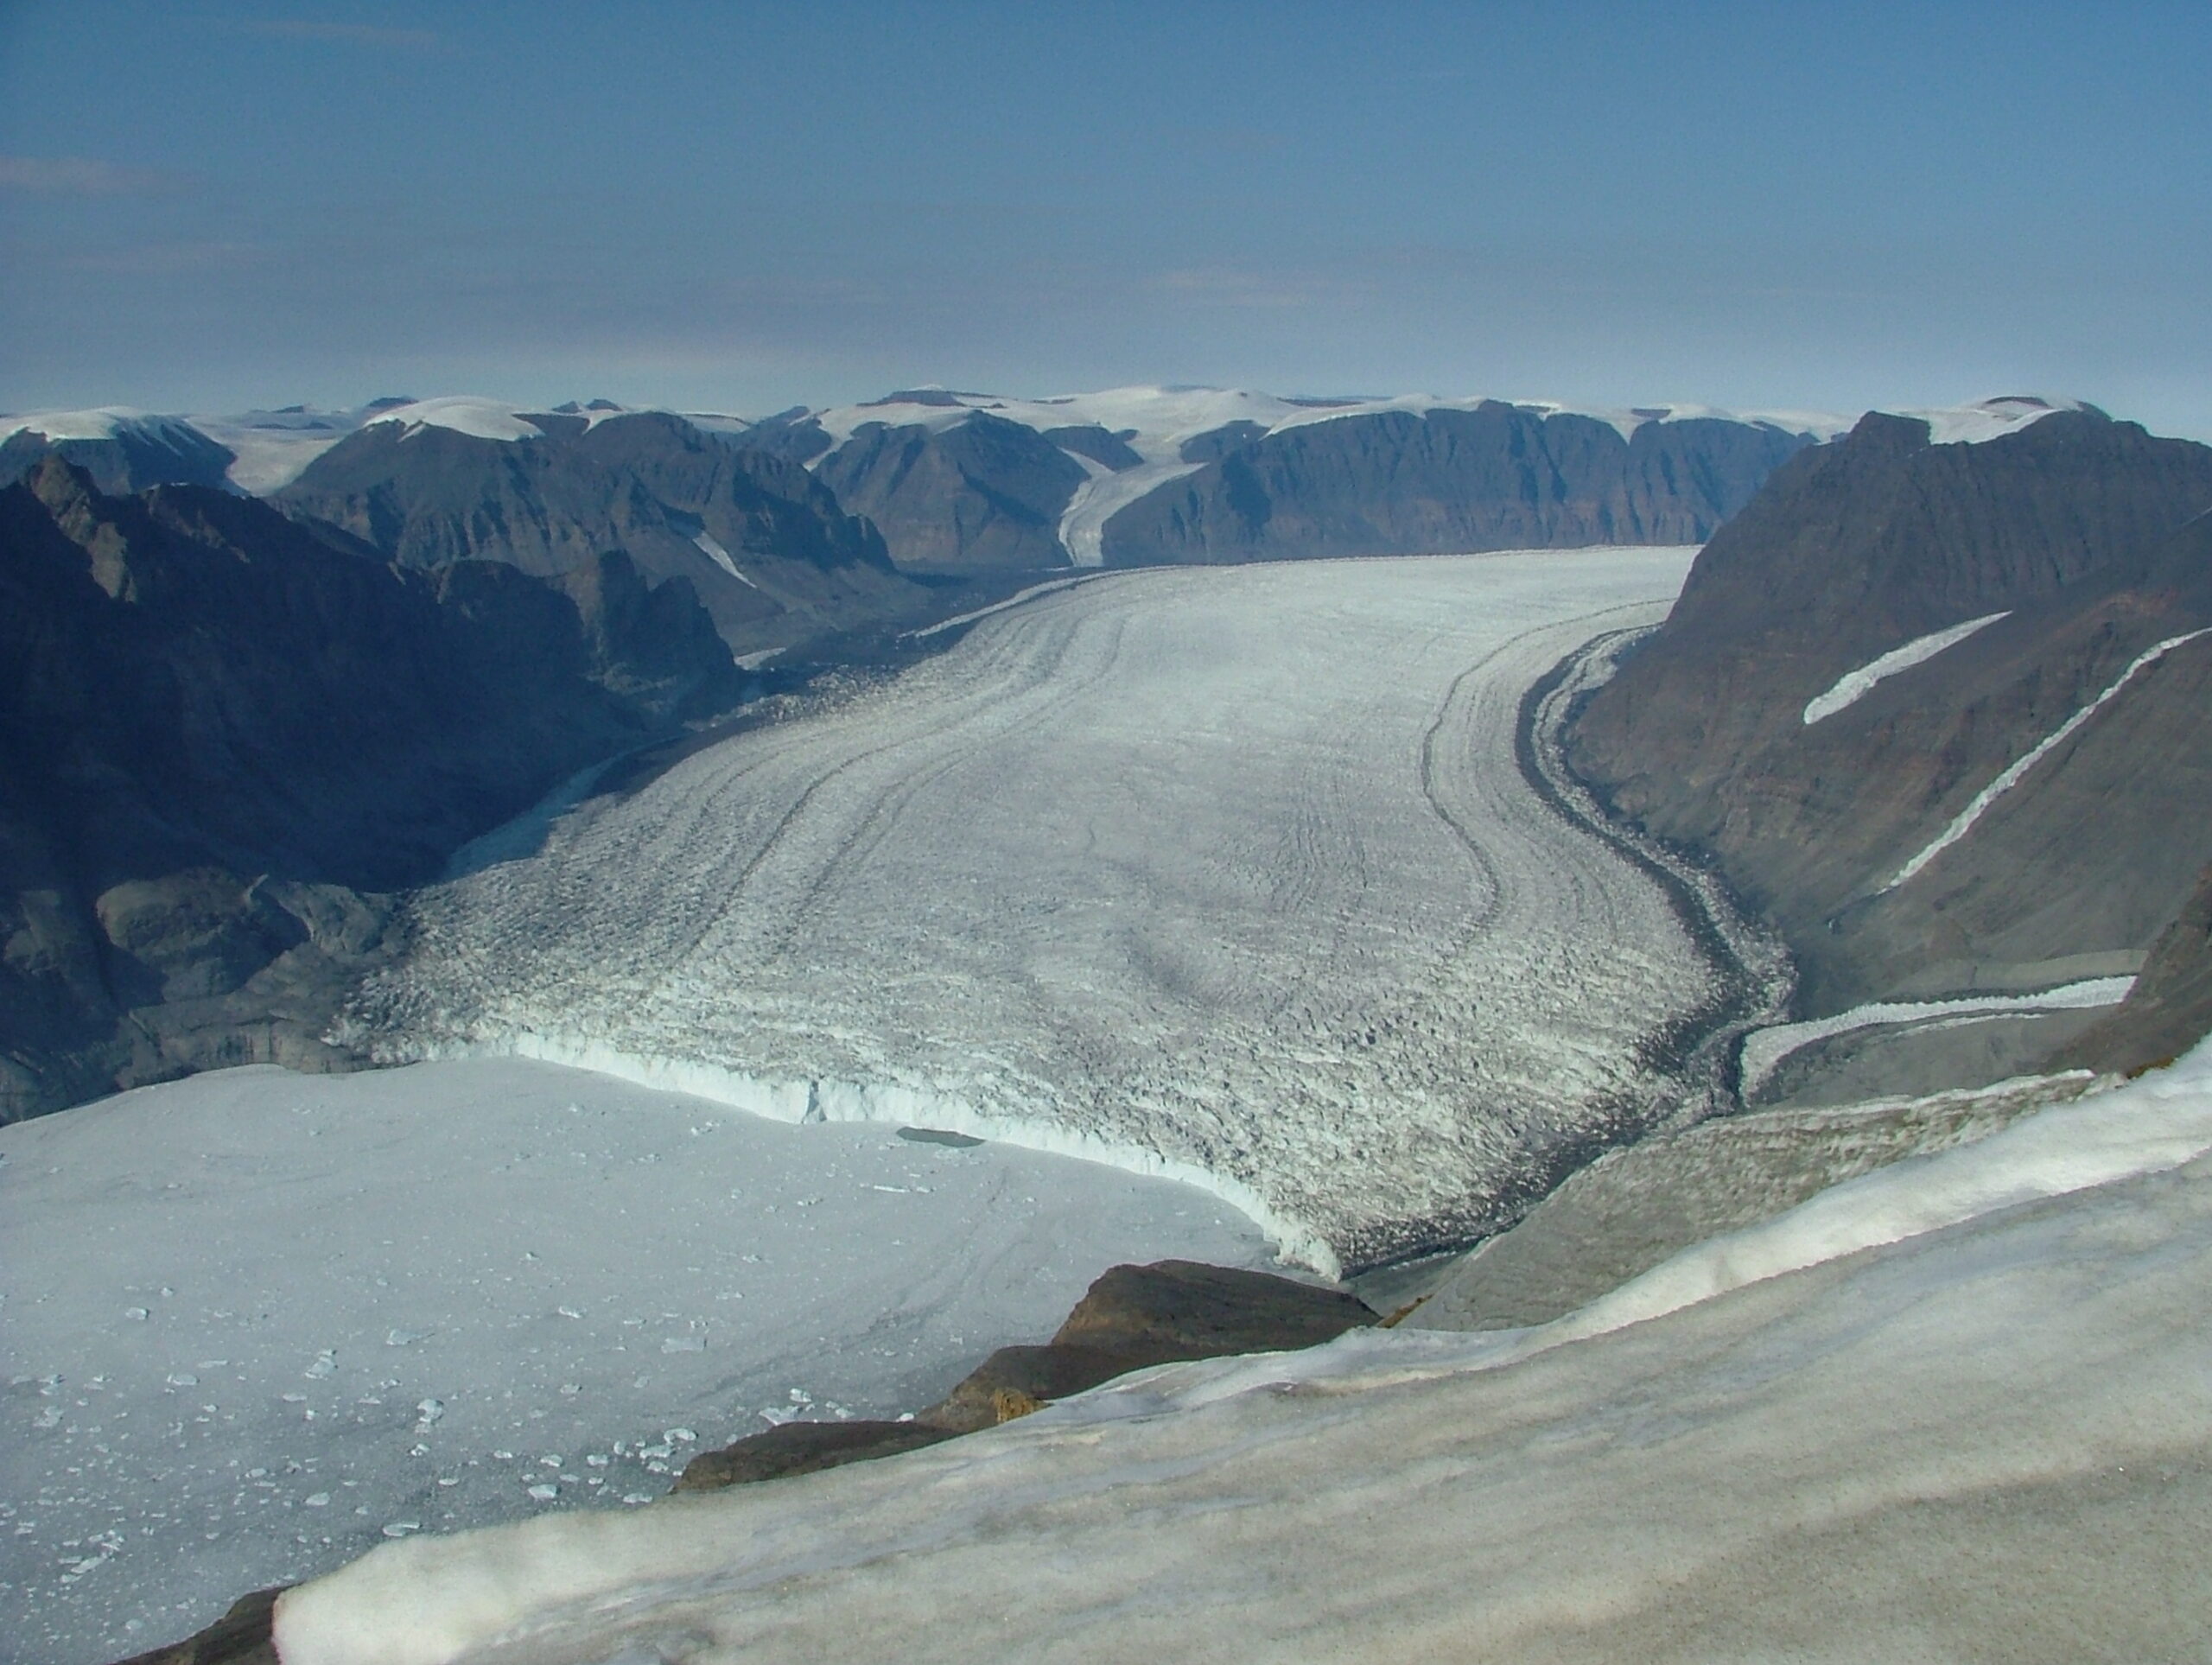 A glacier between rocky valleys